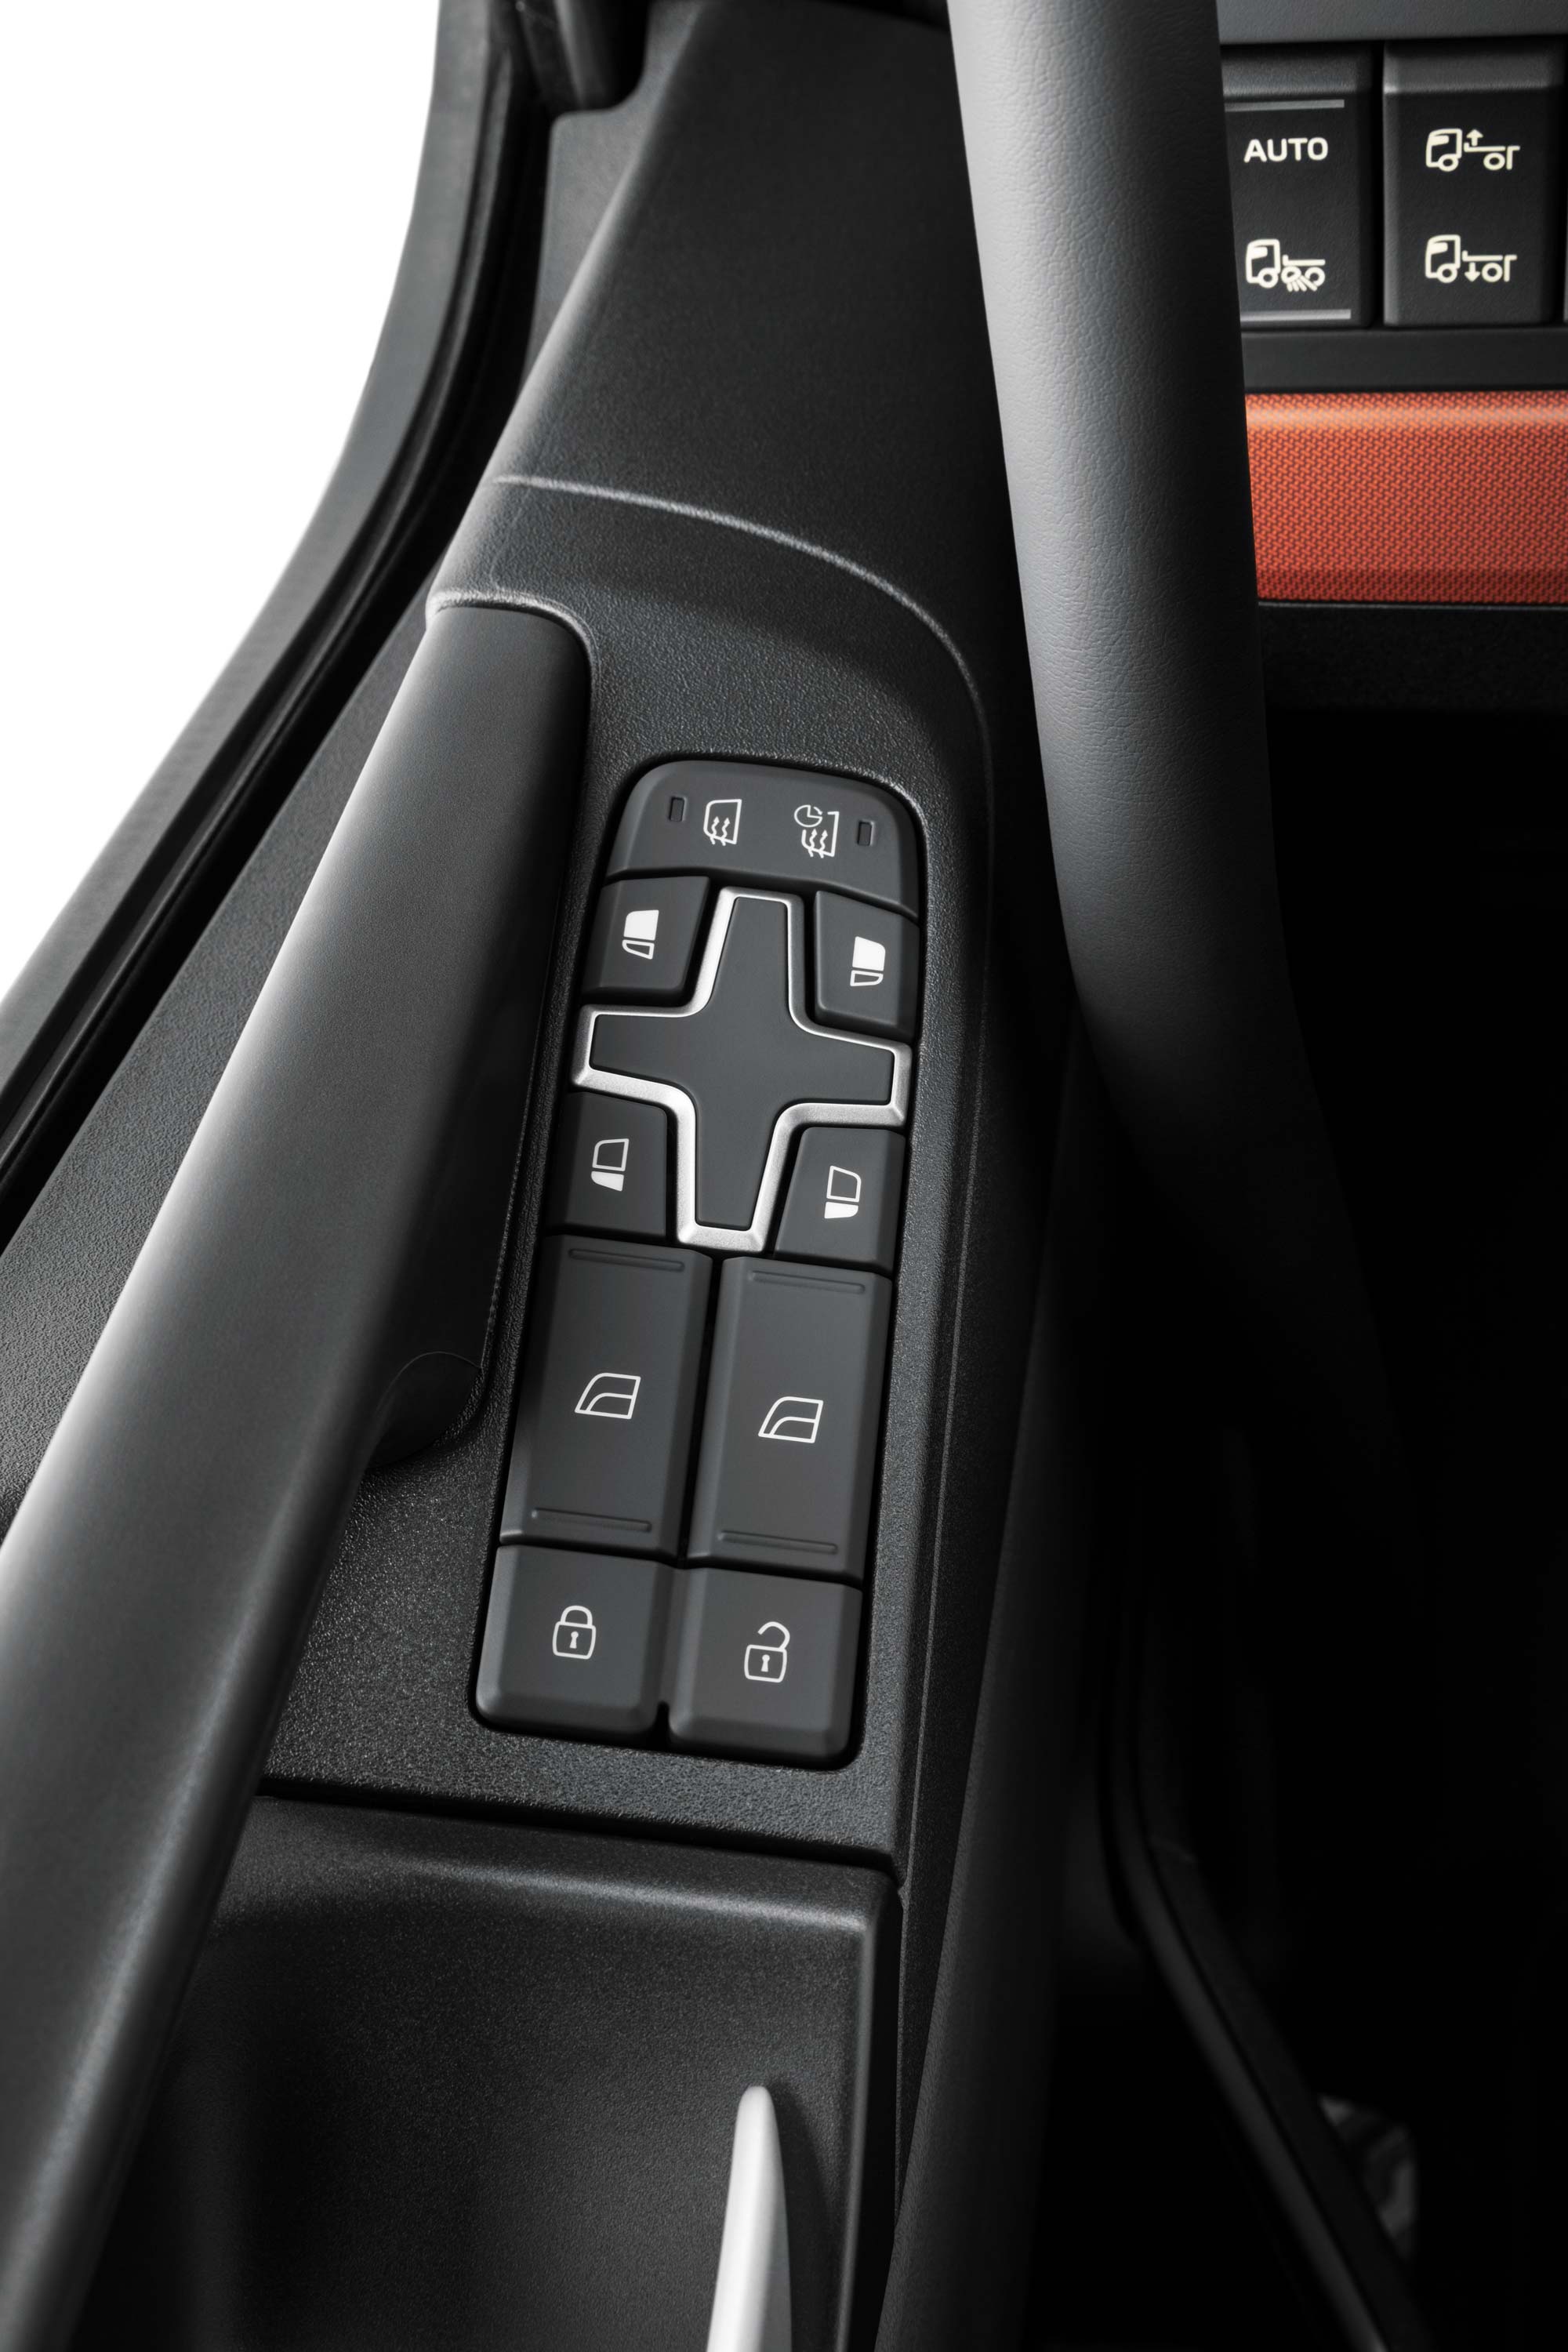 Commandes intégrées à l'intérieur du Volvo FH16 pour faciliter l'accès.